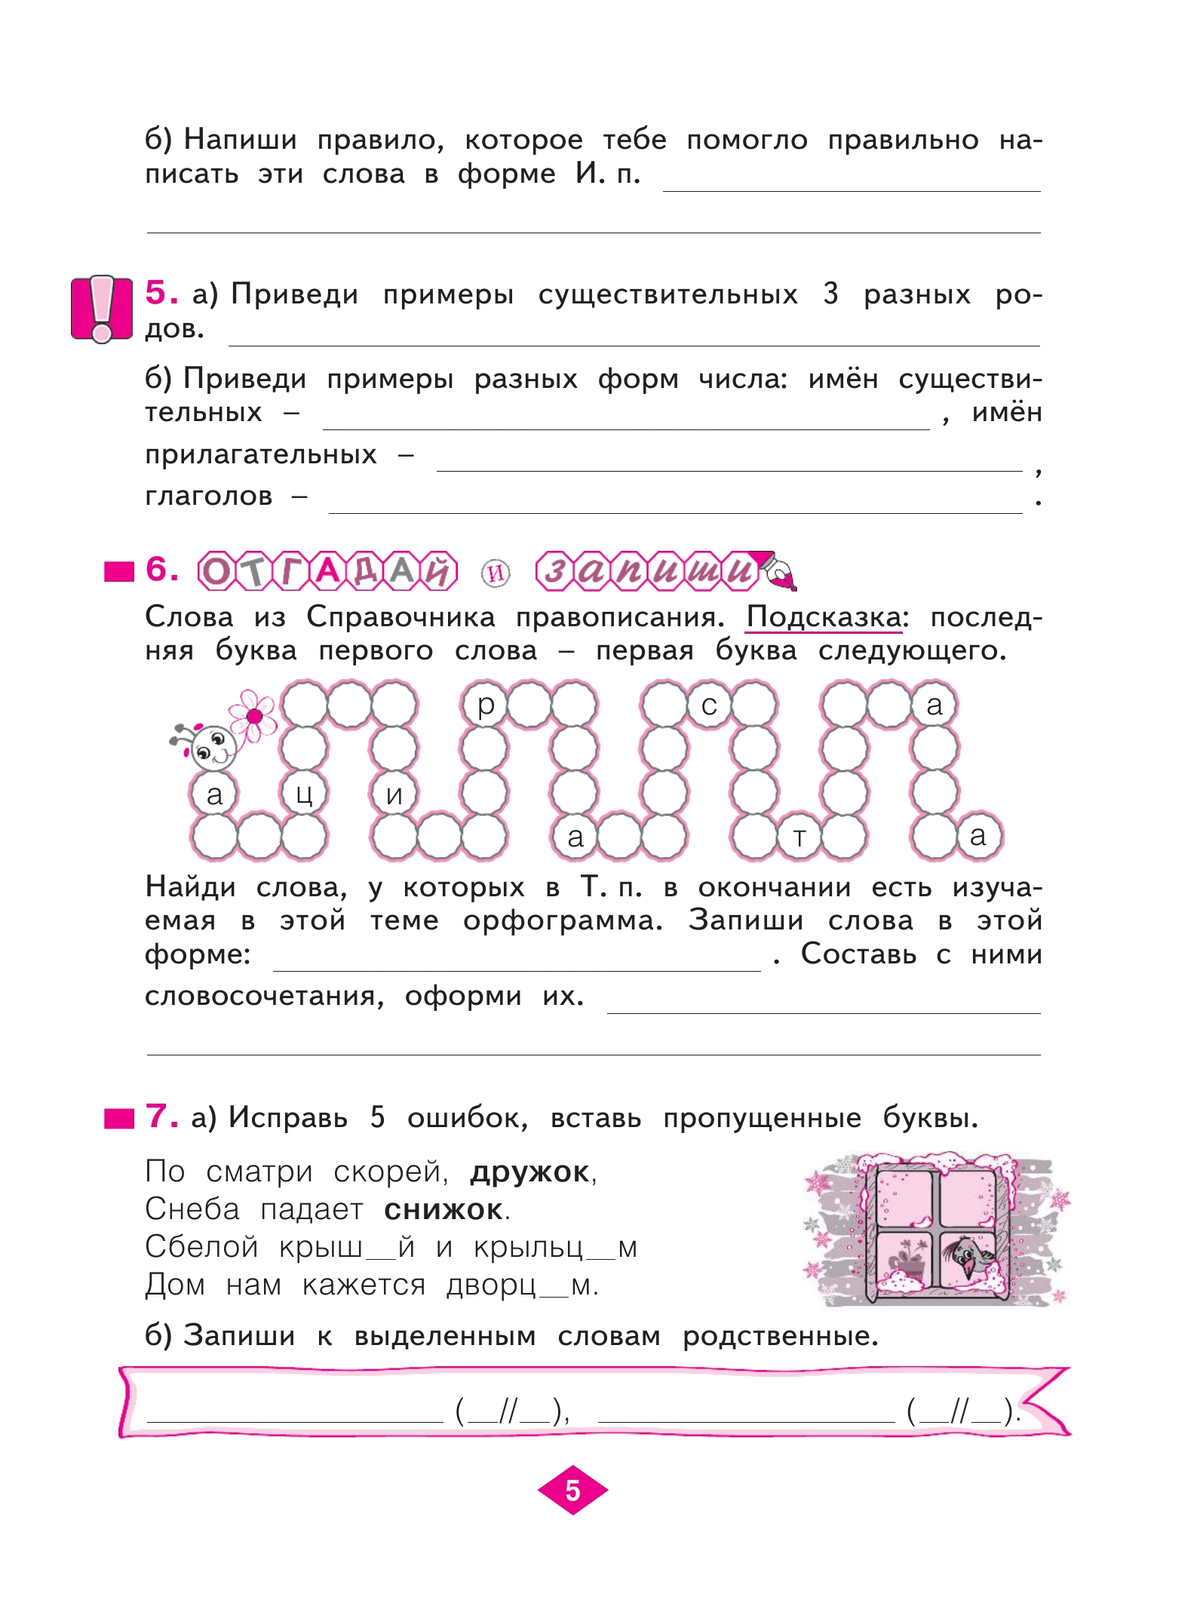 Русский язык. Рабочая тетрадь. 3 класс. В 4-х частях. Часть 4 5